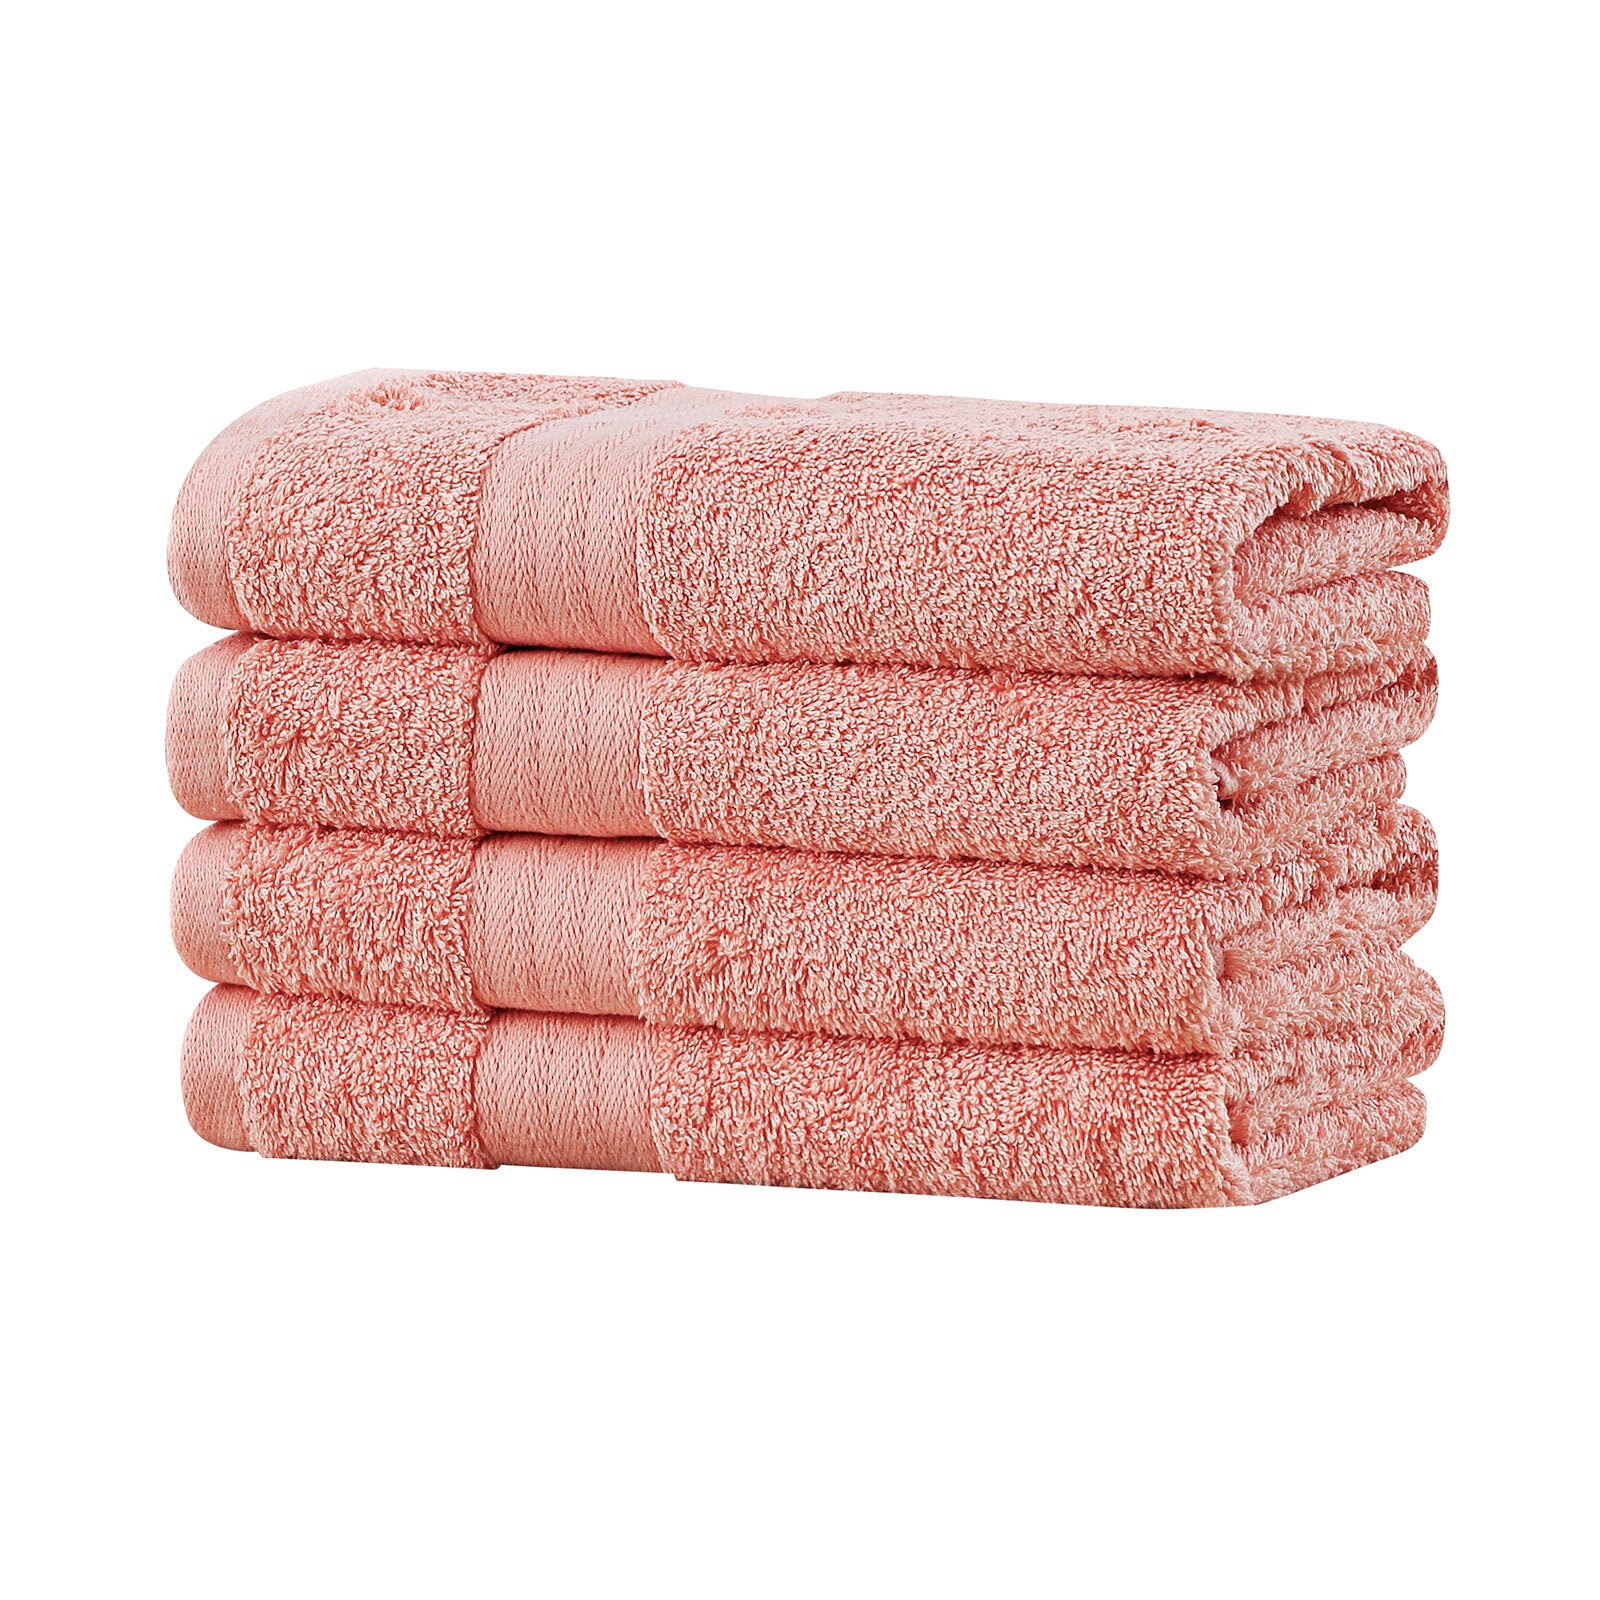 Linenland Bath Towel 4 Piece Cotton Hand Towels Set - Coral - BM House & Garden